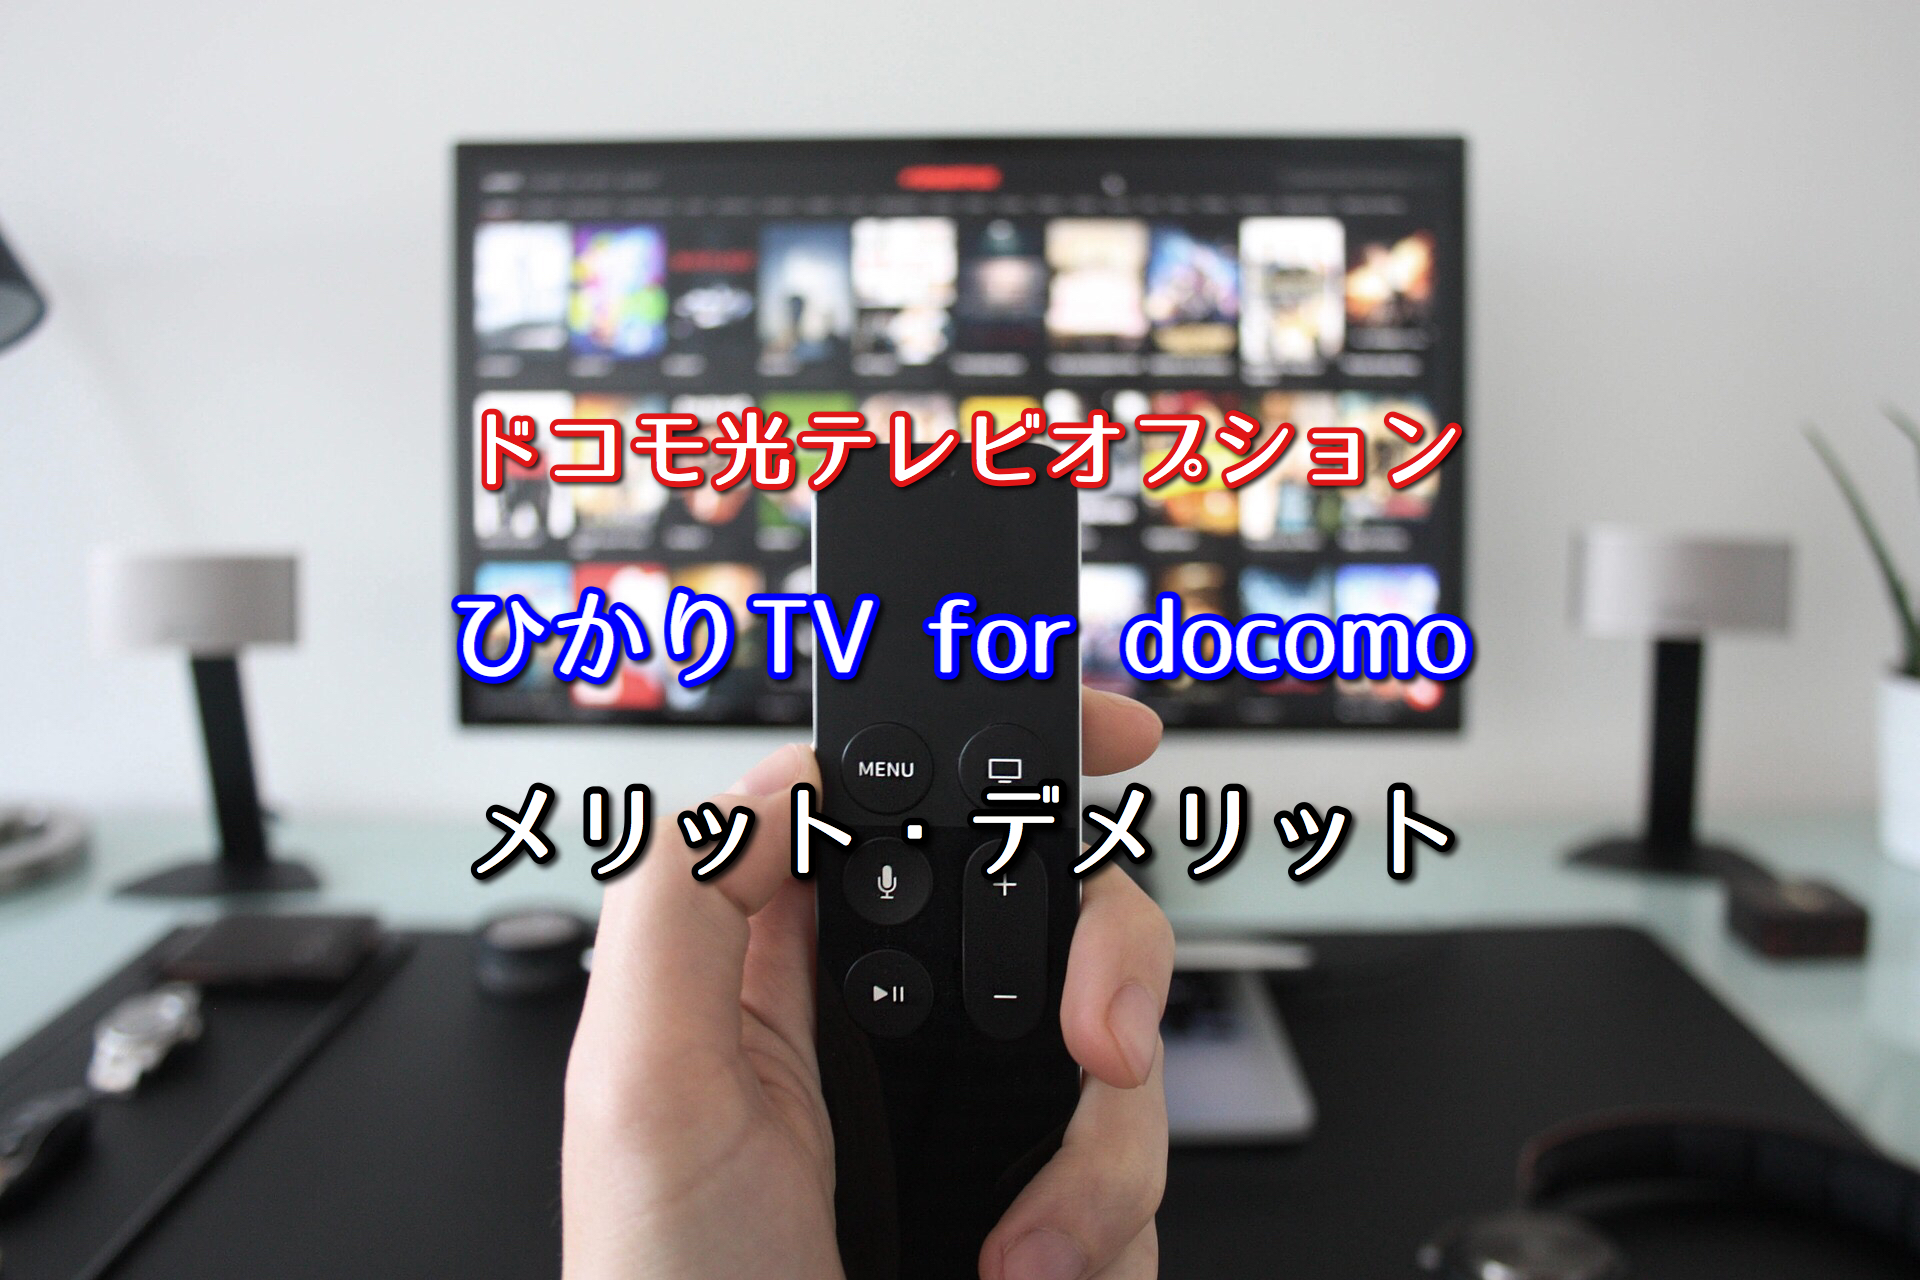 ドコモ光テレビオプション ひかりtvのデメリットに要注意 ネット回線比較4net